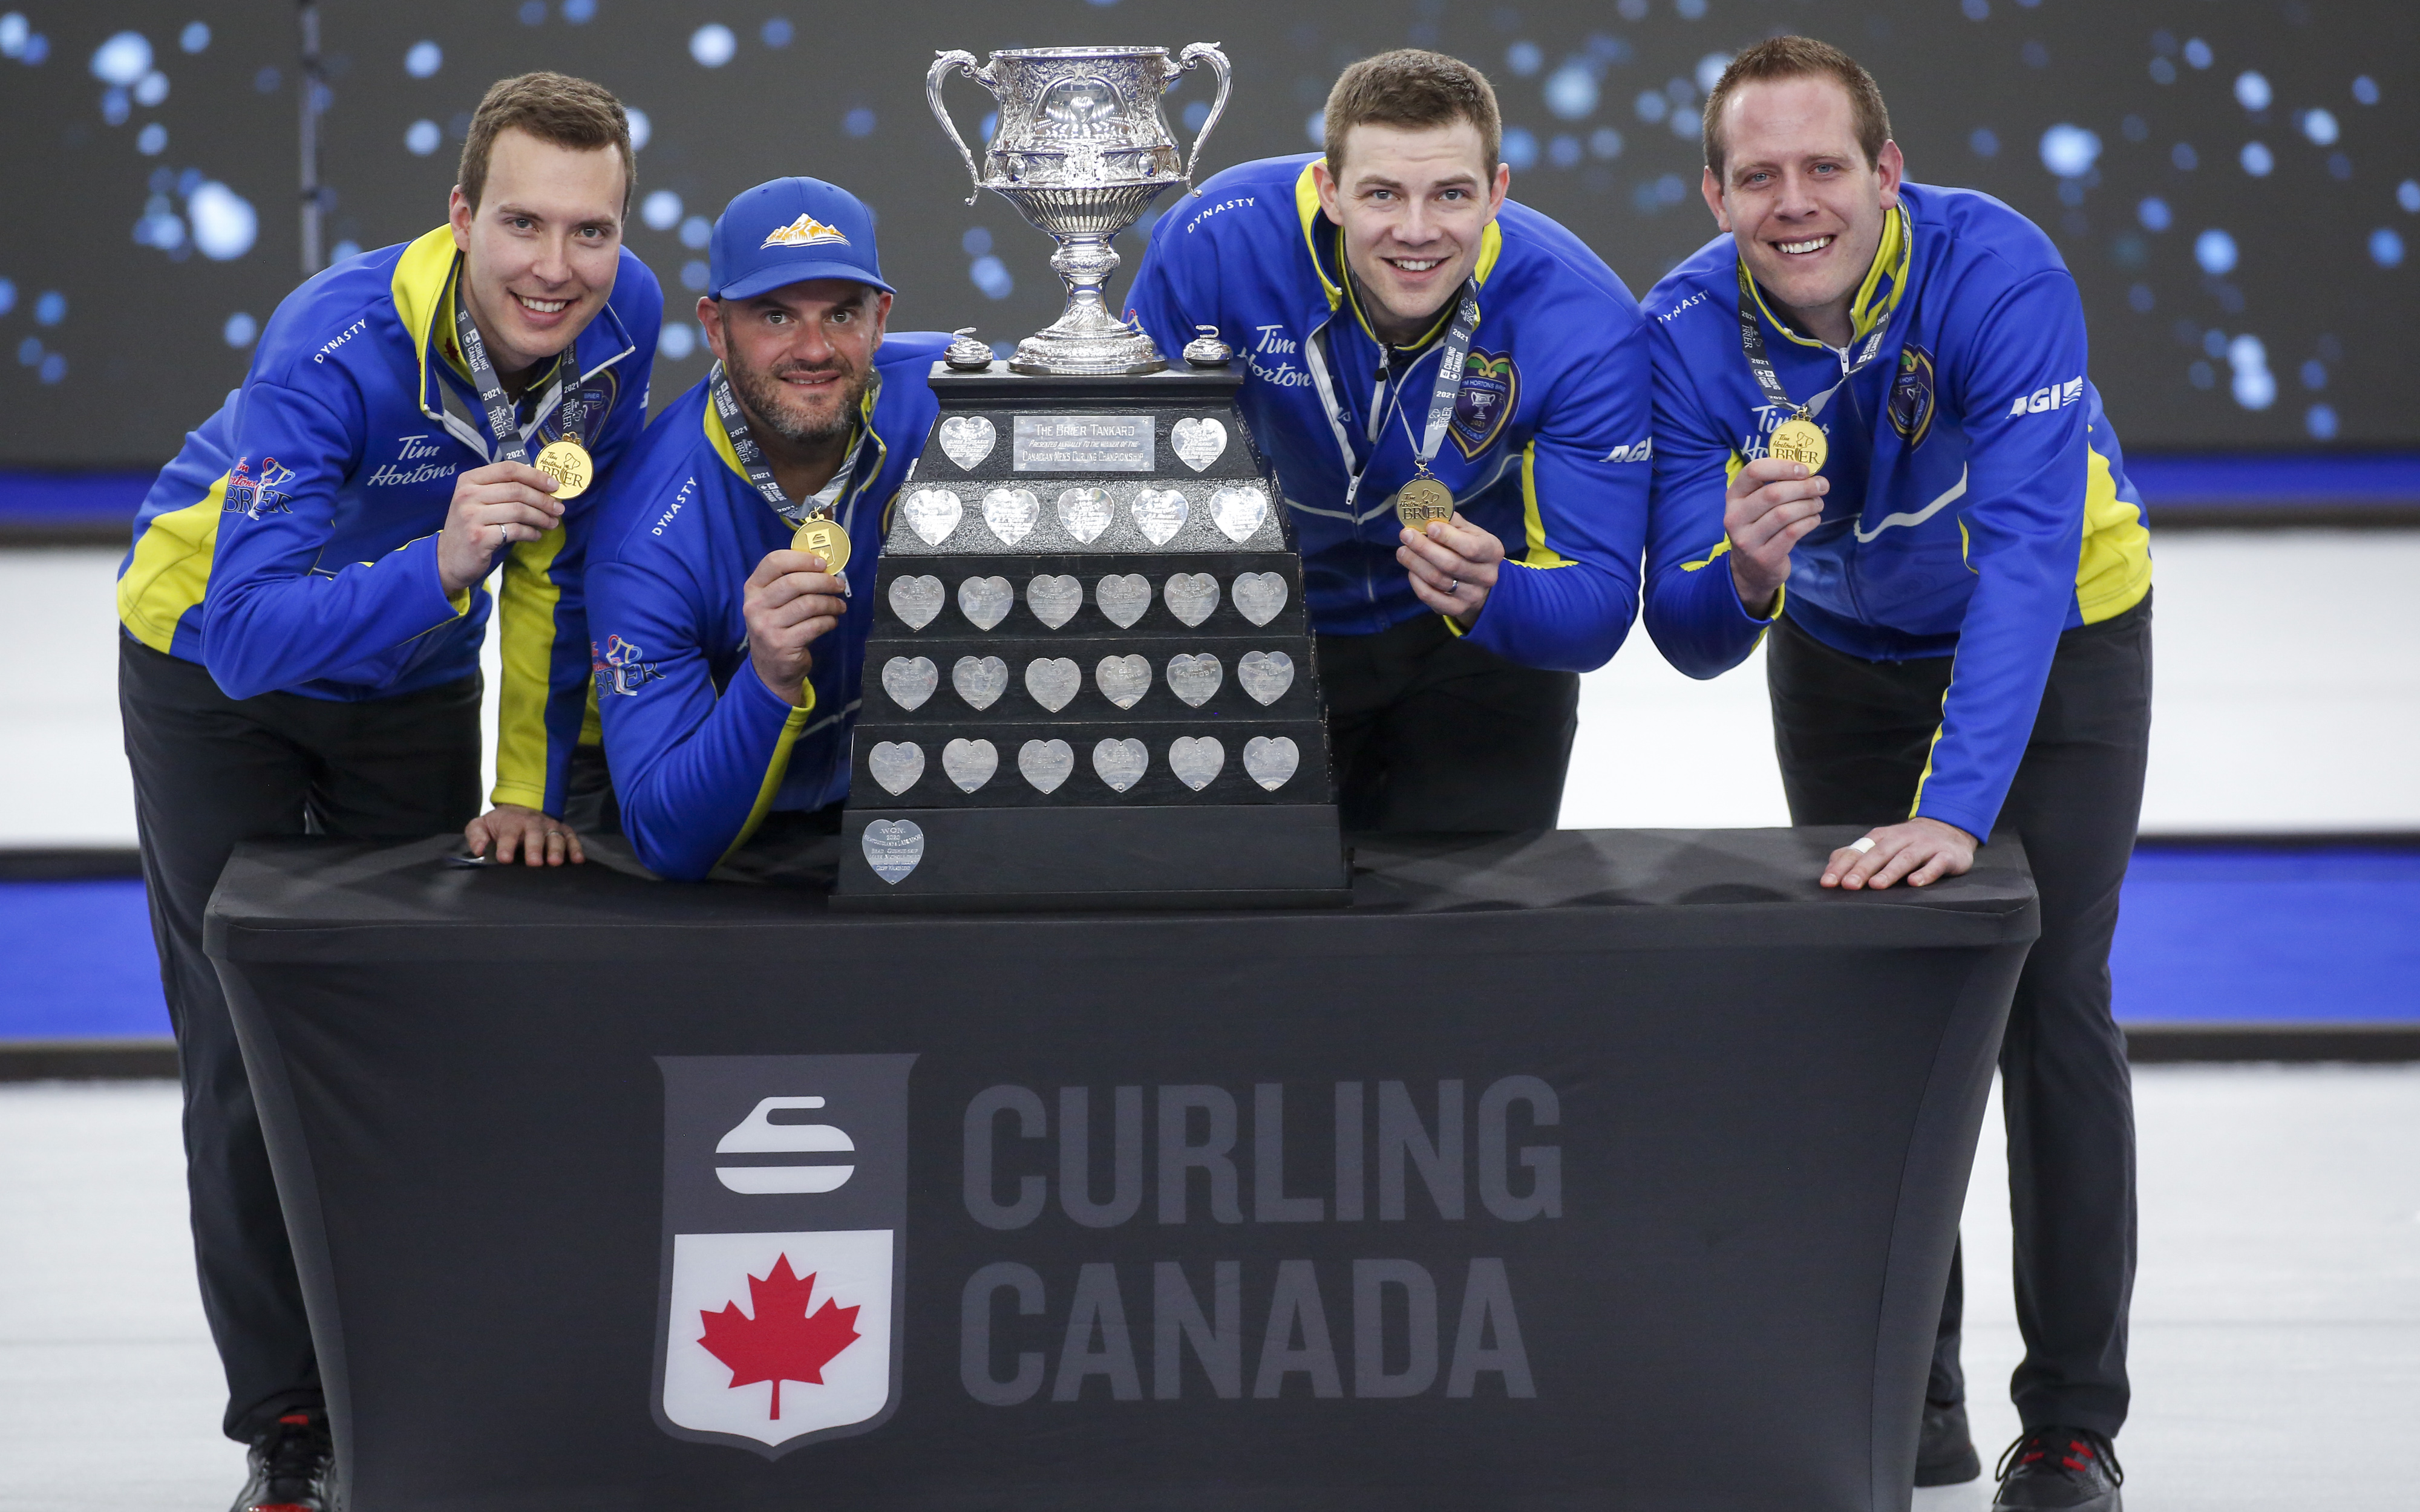 tým Alberta, zleva doprava, přeskočit Brendan Bottcher, třetí Darren Moulding, druhý Brad Thiessen, vedoucí Karrick Martin slaví porážku týmu Wild Card Two, aby vyhrál finále Brier curling v Calgary, Alta., Neděle 14. Března 2021.